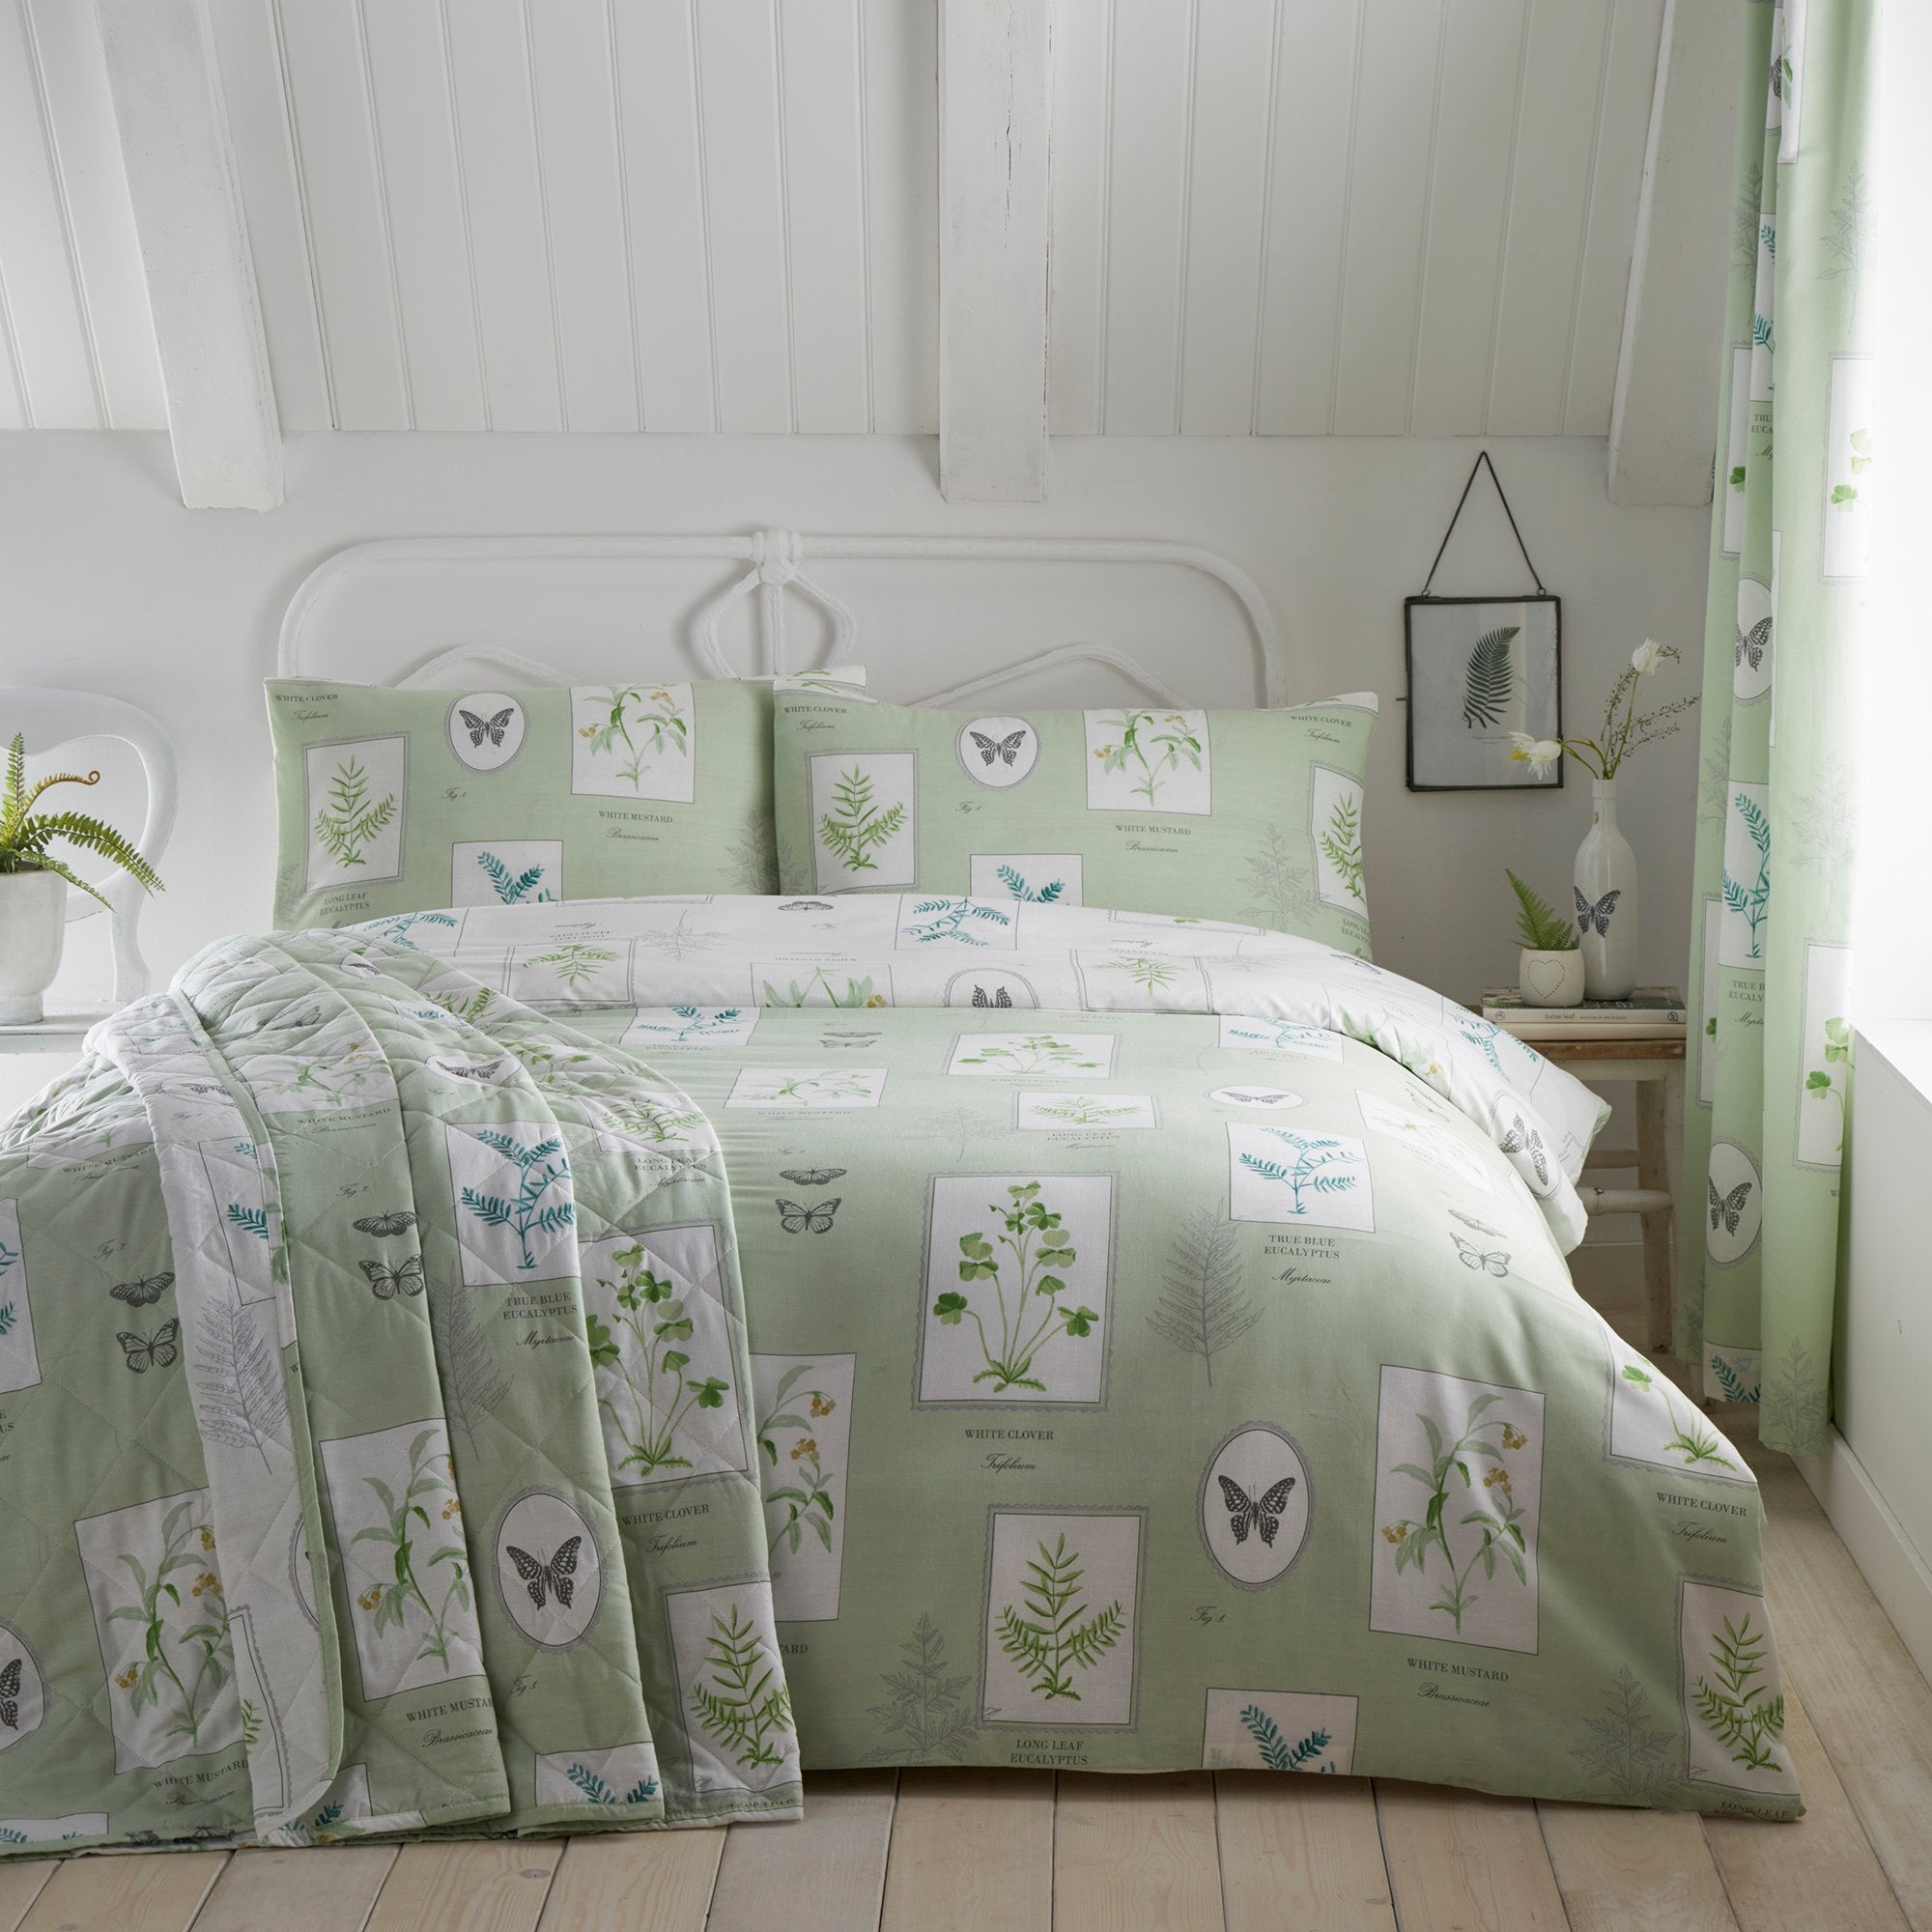 Bedspread Floral Garden by Dreams & Drapes Design in Green